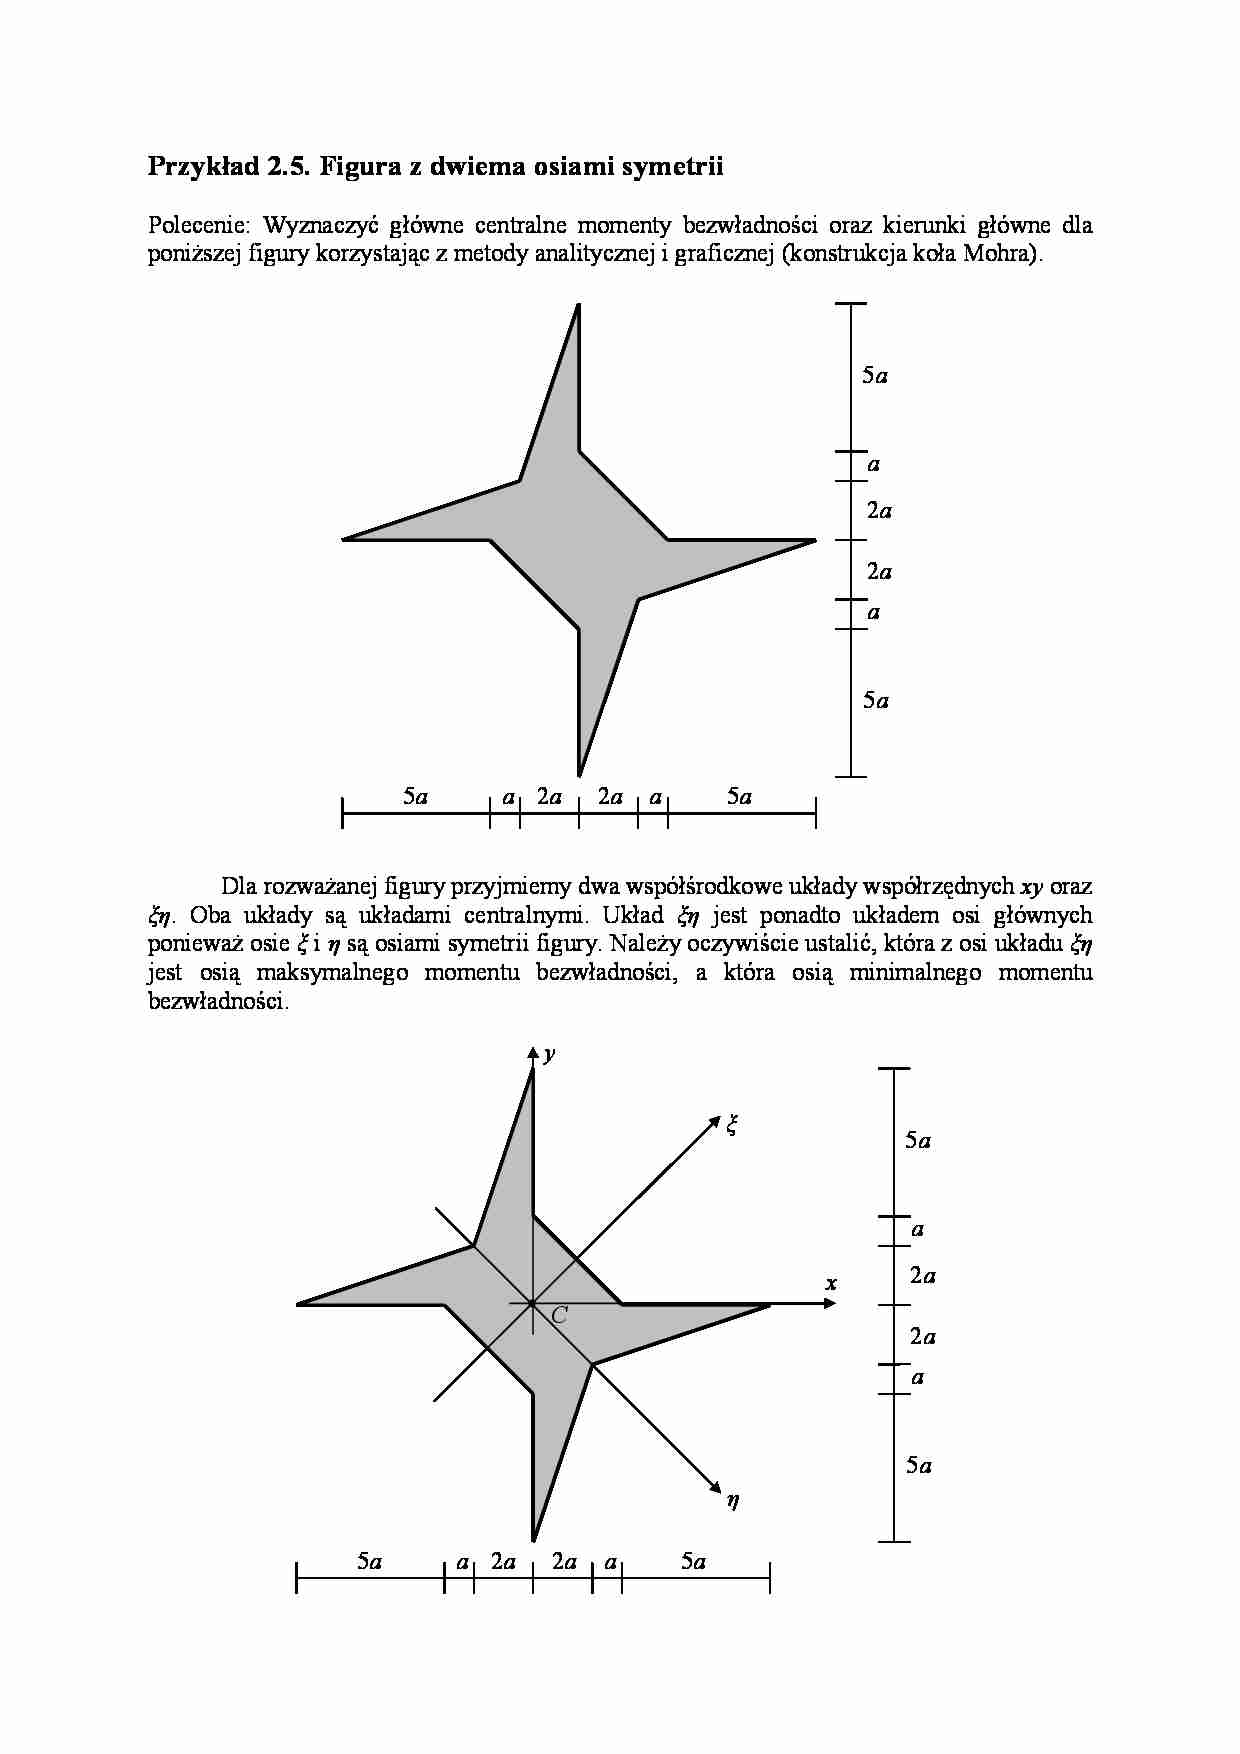 Figura z dwiema osiami symetrii  - omówienie - strona 1